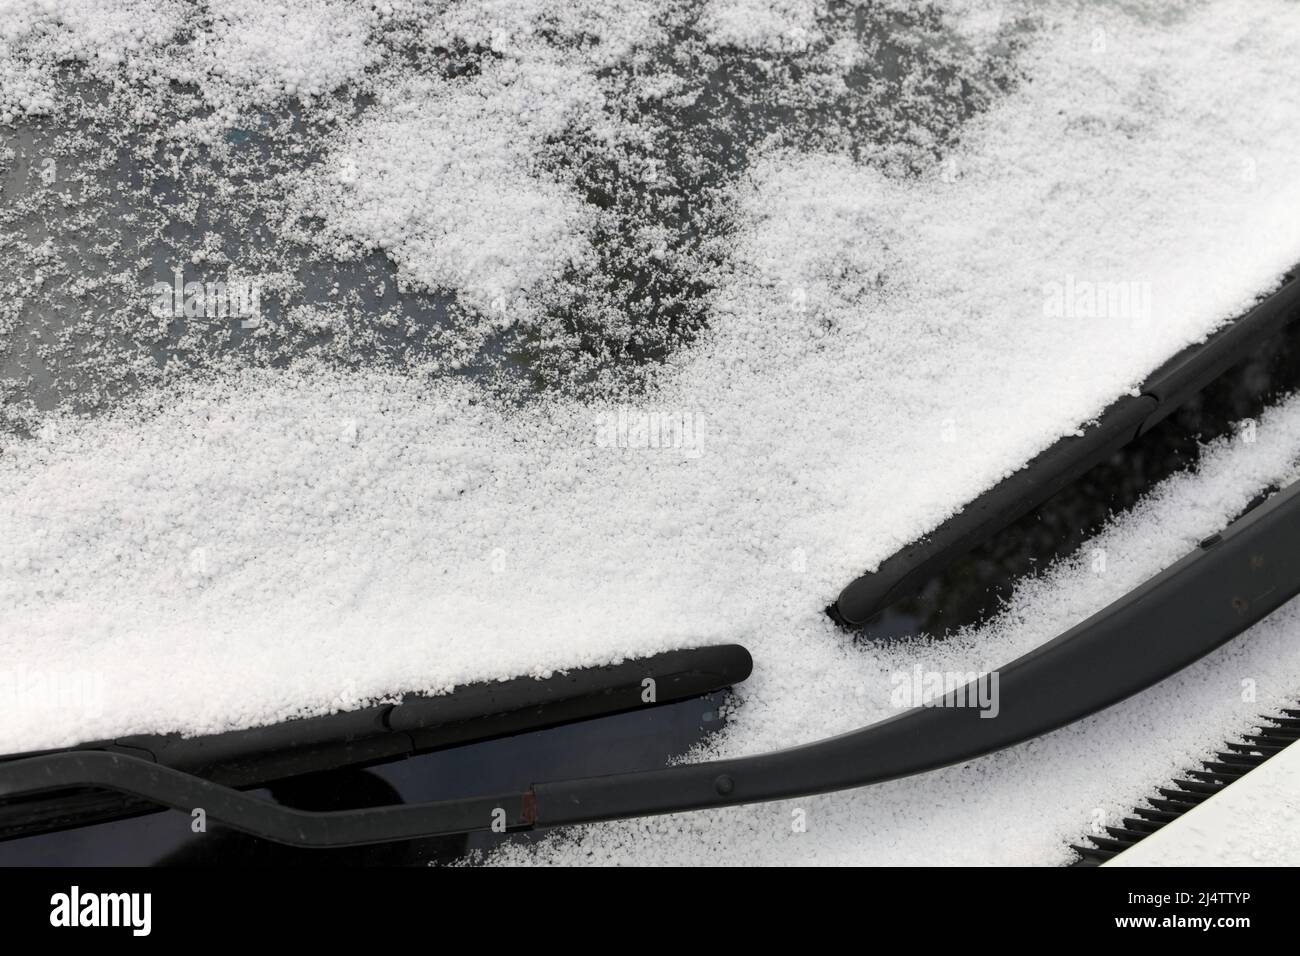 Gros plan des pellets de neige Graupel sur le pare-brise d'un véhicule Banque D'Images